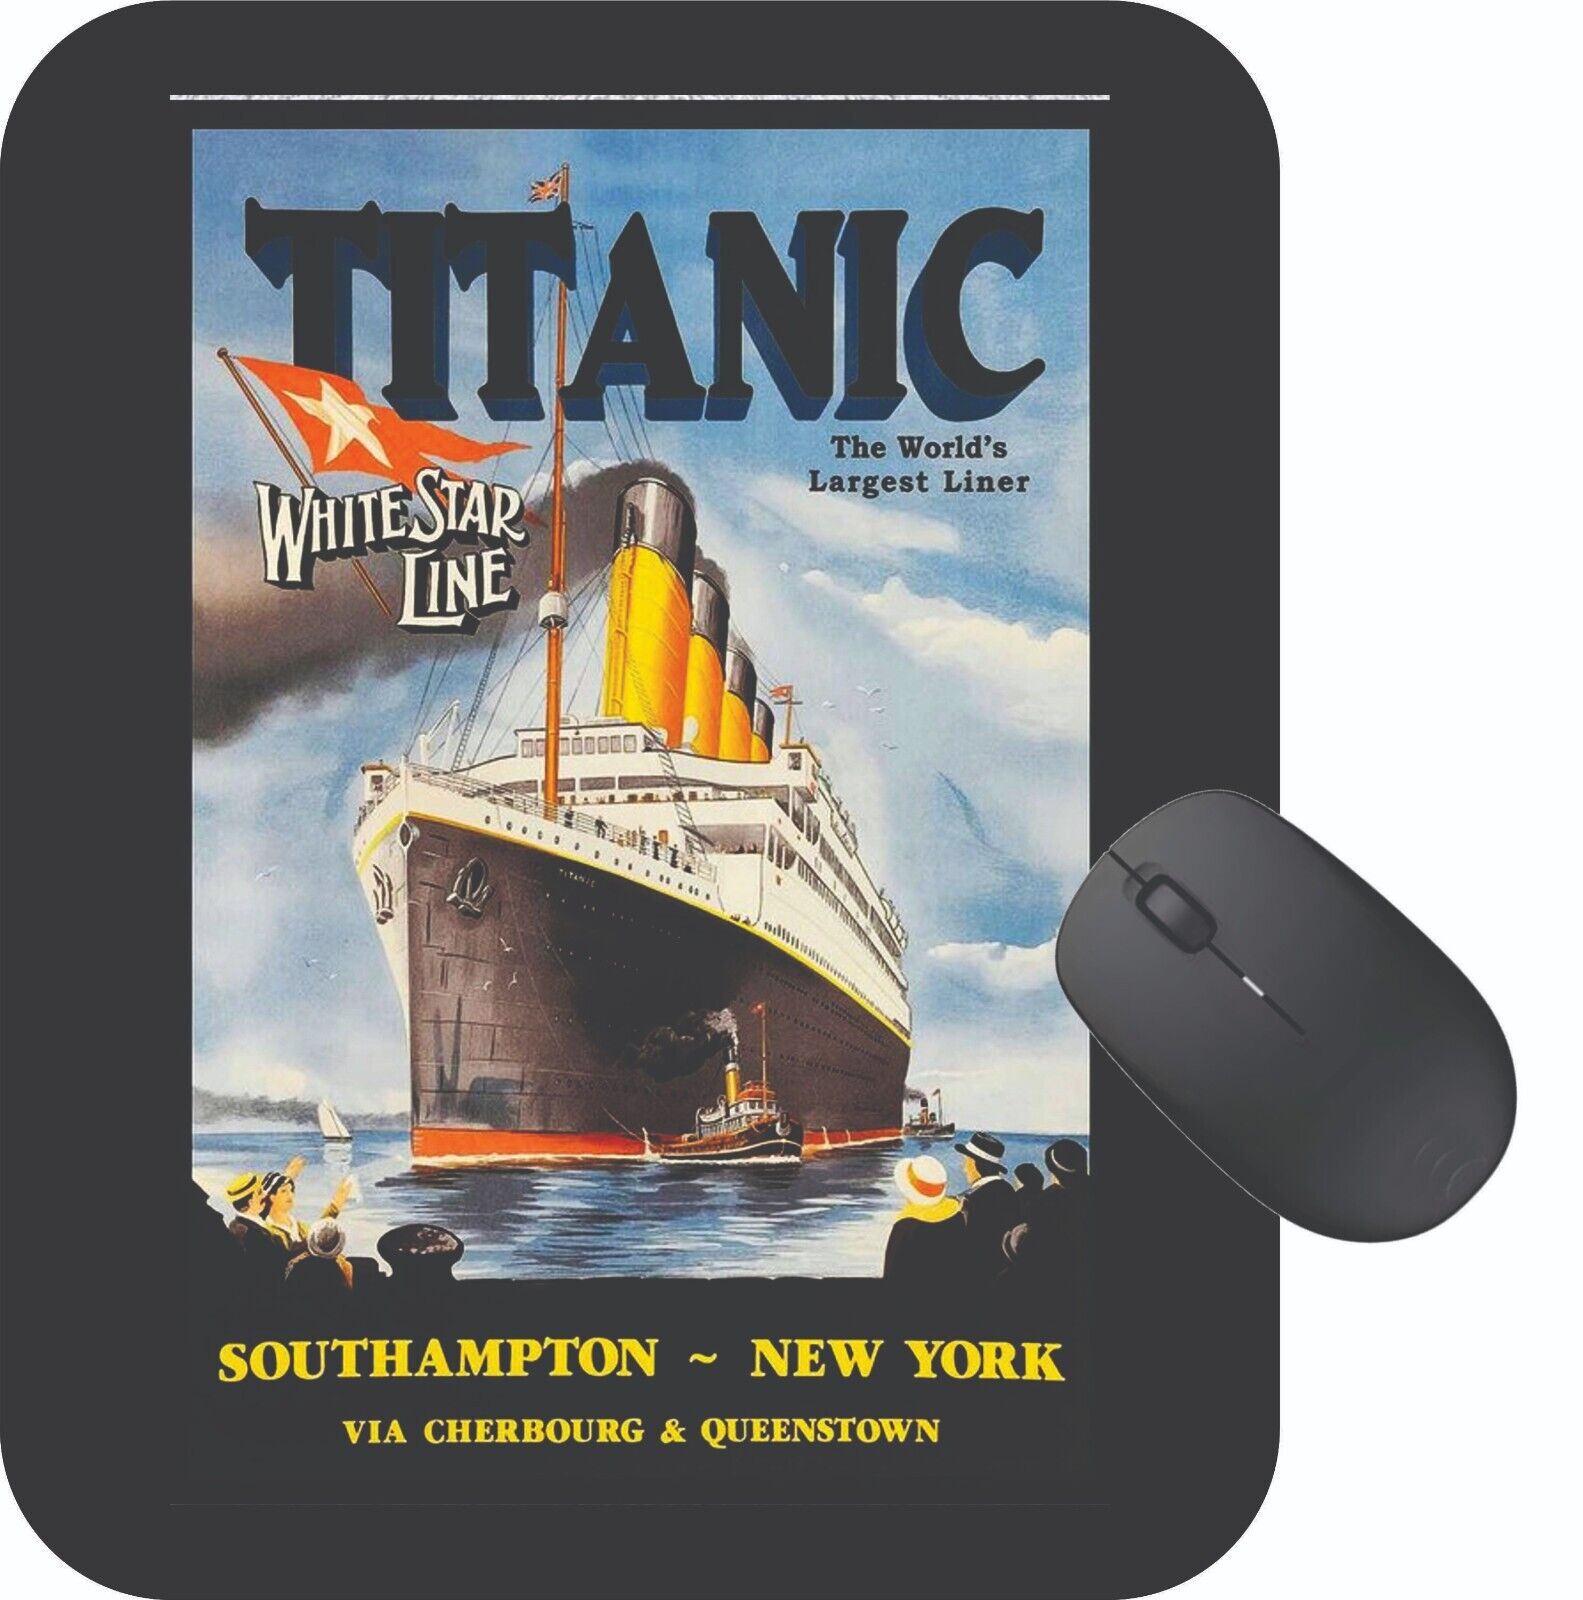 TRavle On Titanic Mouse Pad Travel Poster Art Vintage Retro